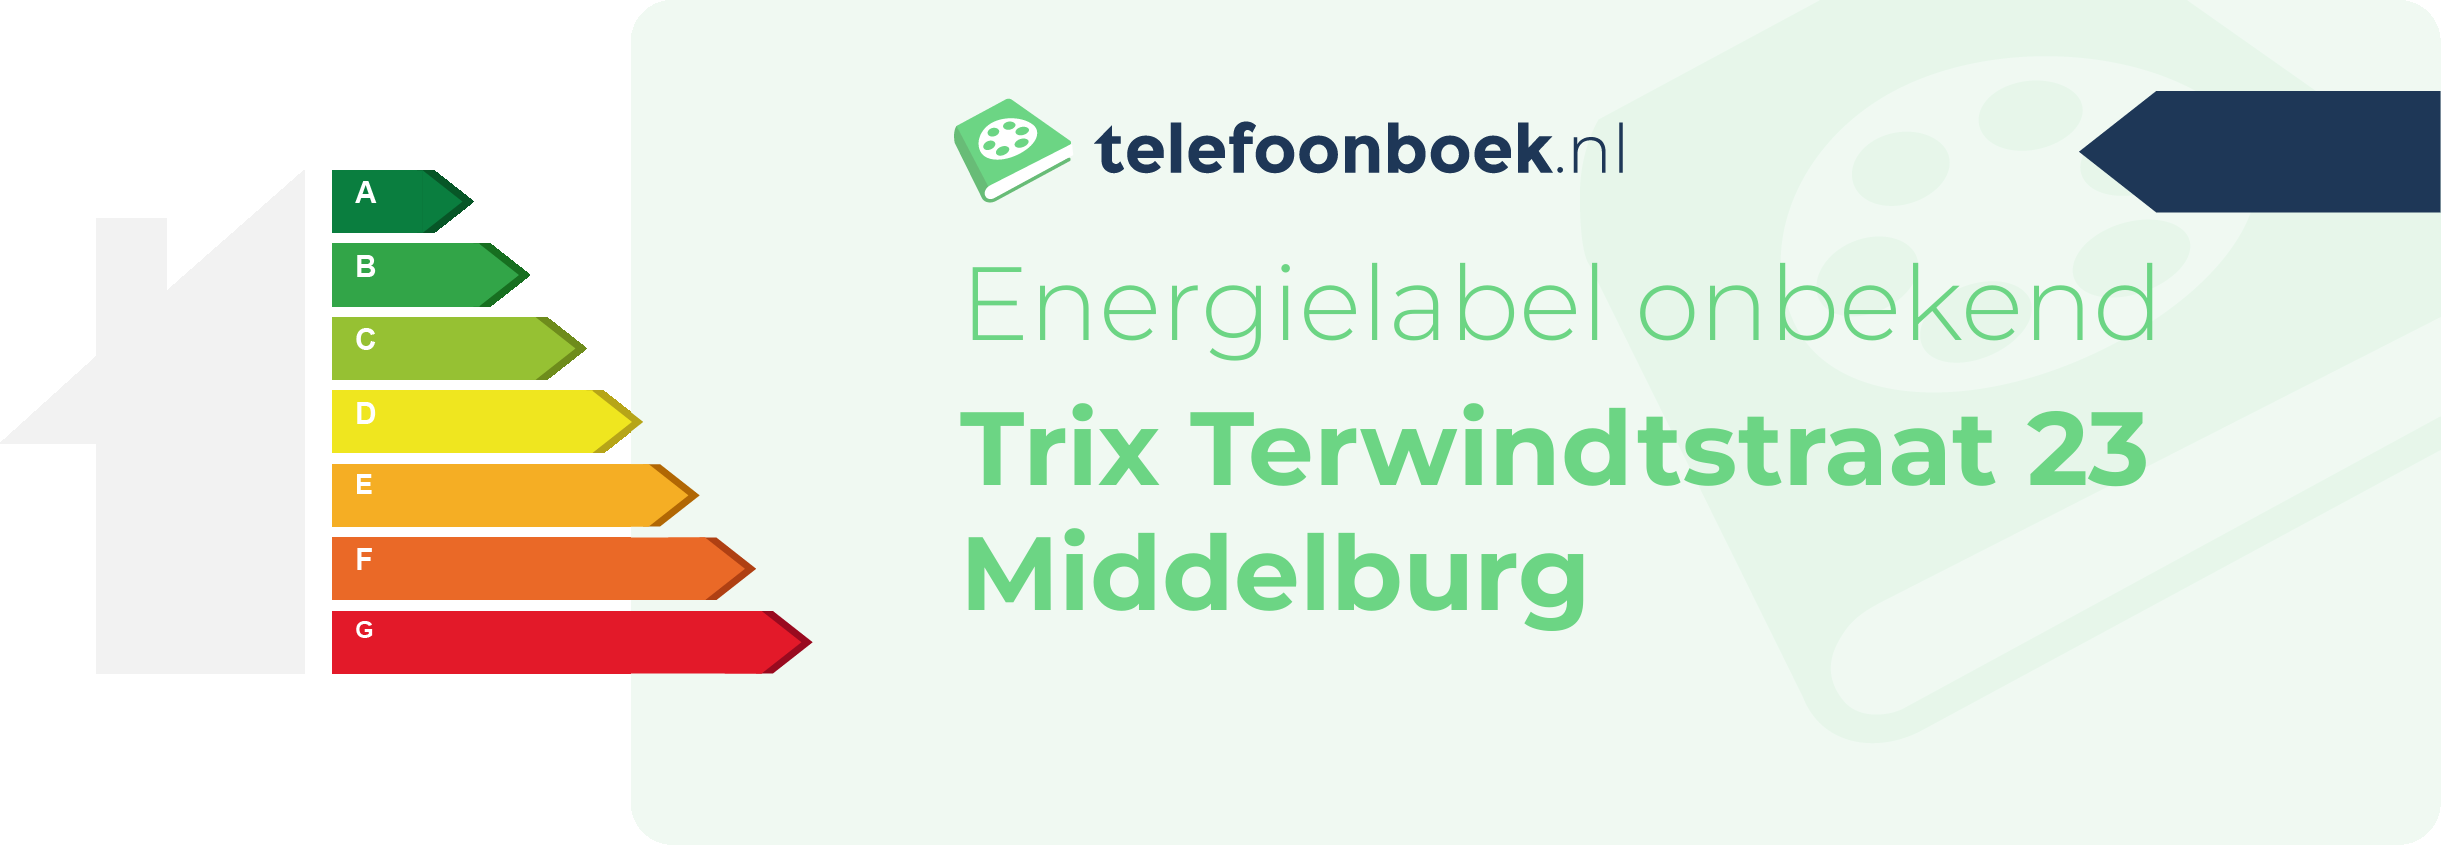 Energielabel Trix Terwindtstraat 23 Middelburg